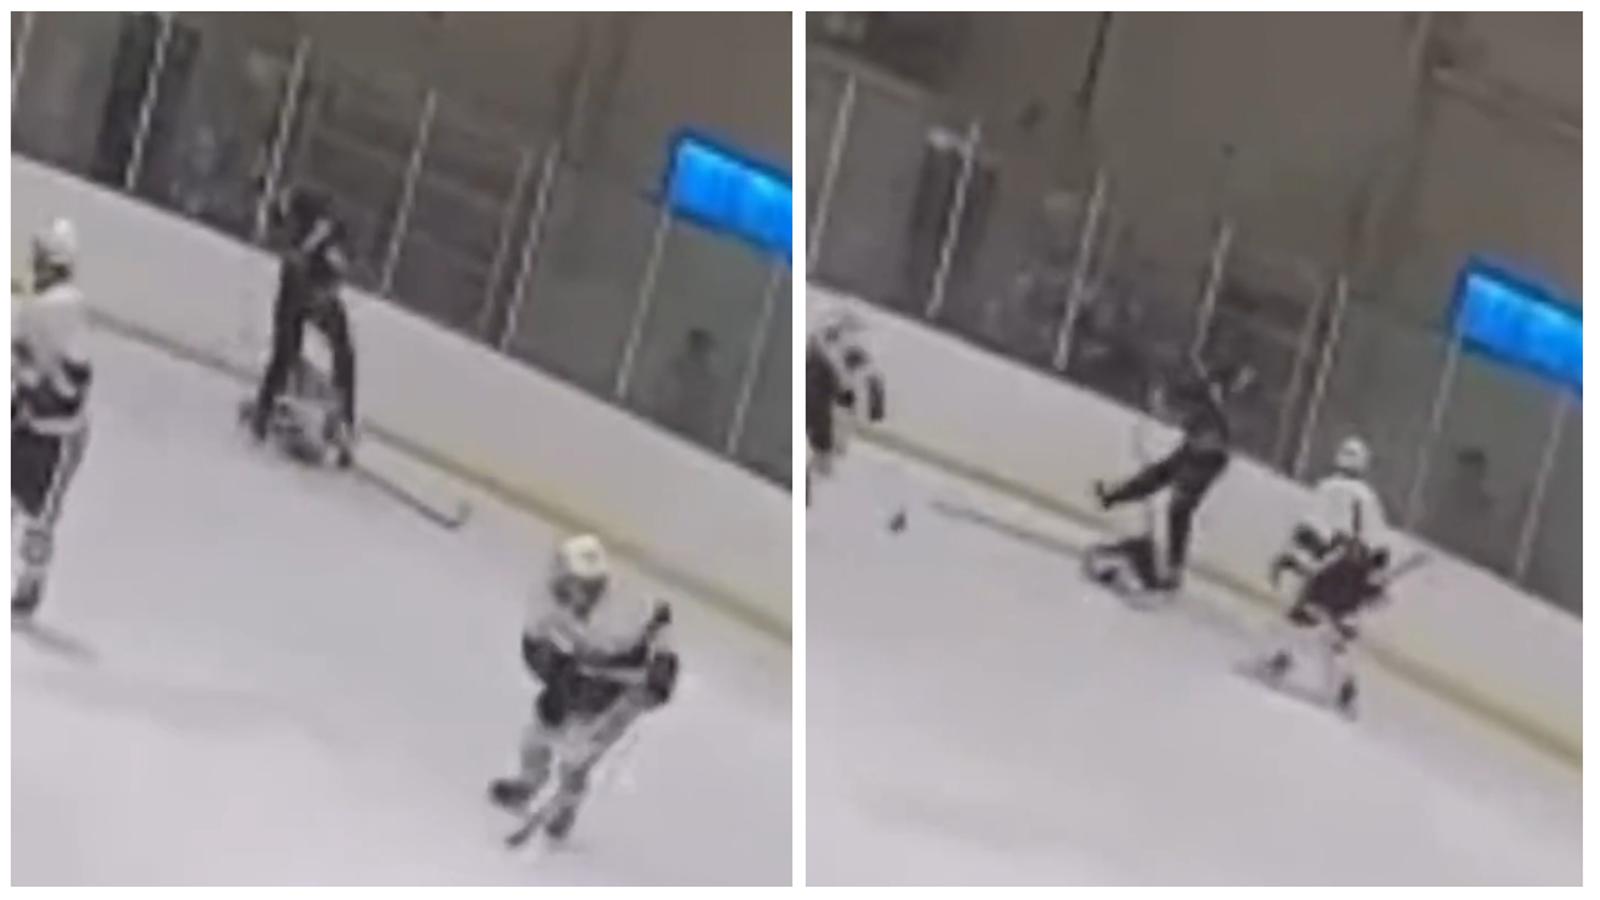 Scène d'horreur au secondaire : un jeune joueur attaque son adversaire à la tête à coups de patin